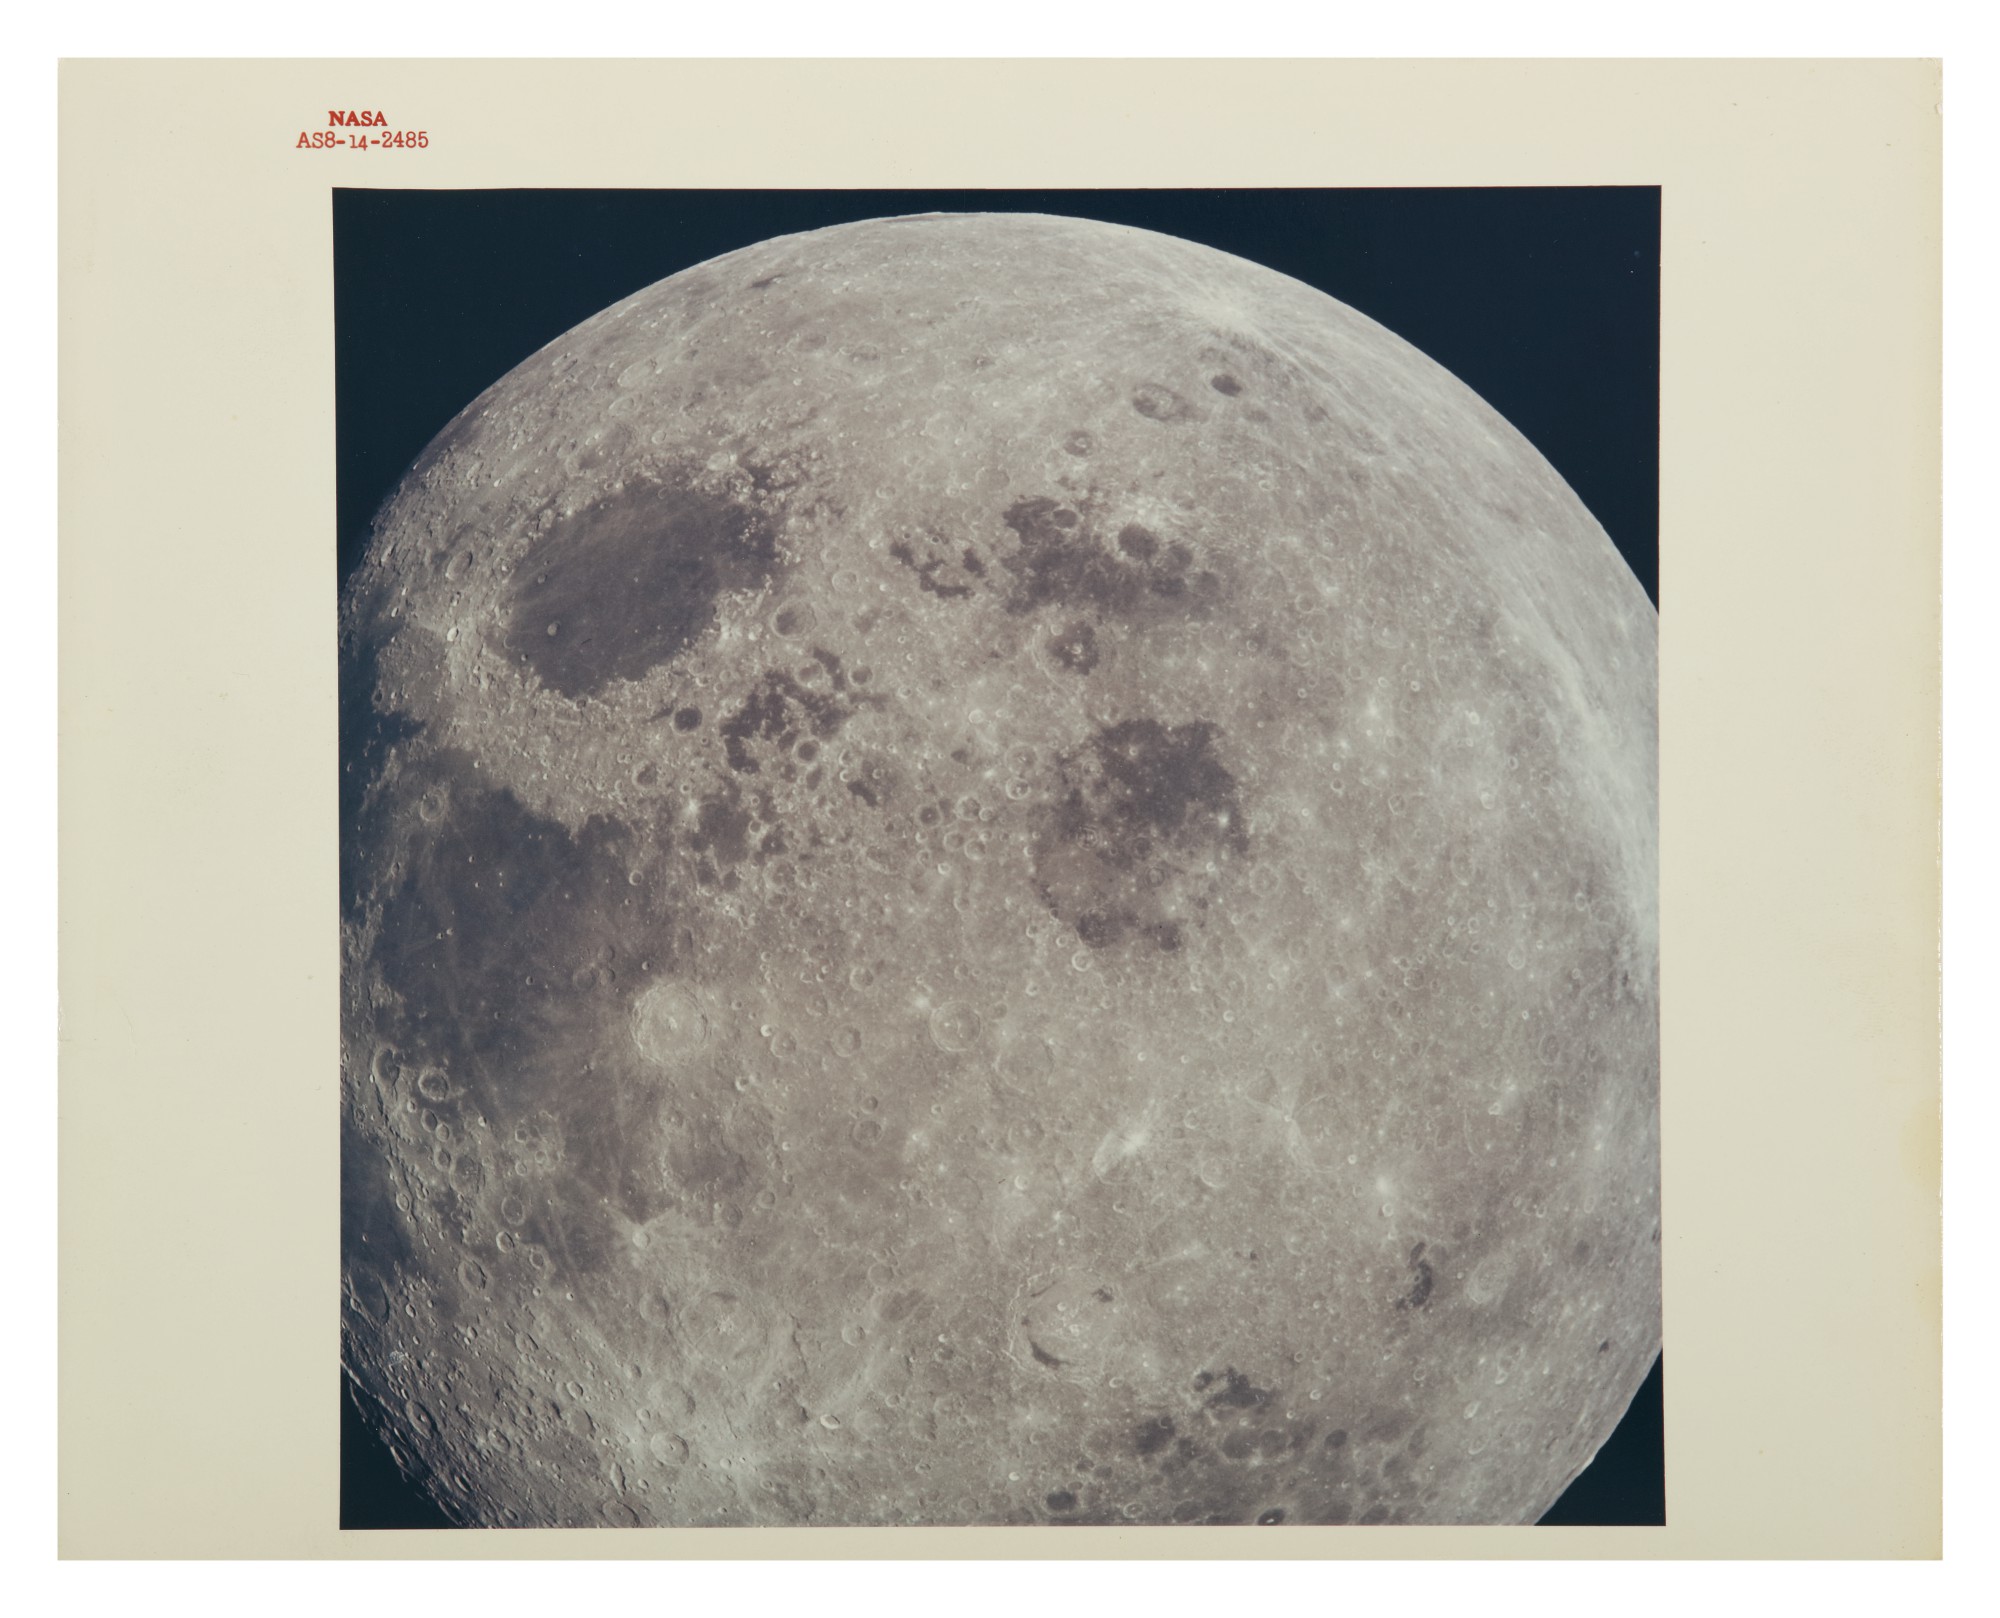 The Moon taken by Apollo 8